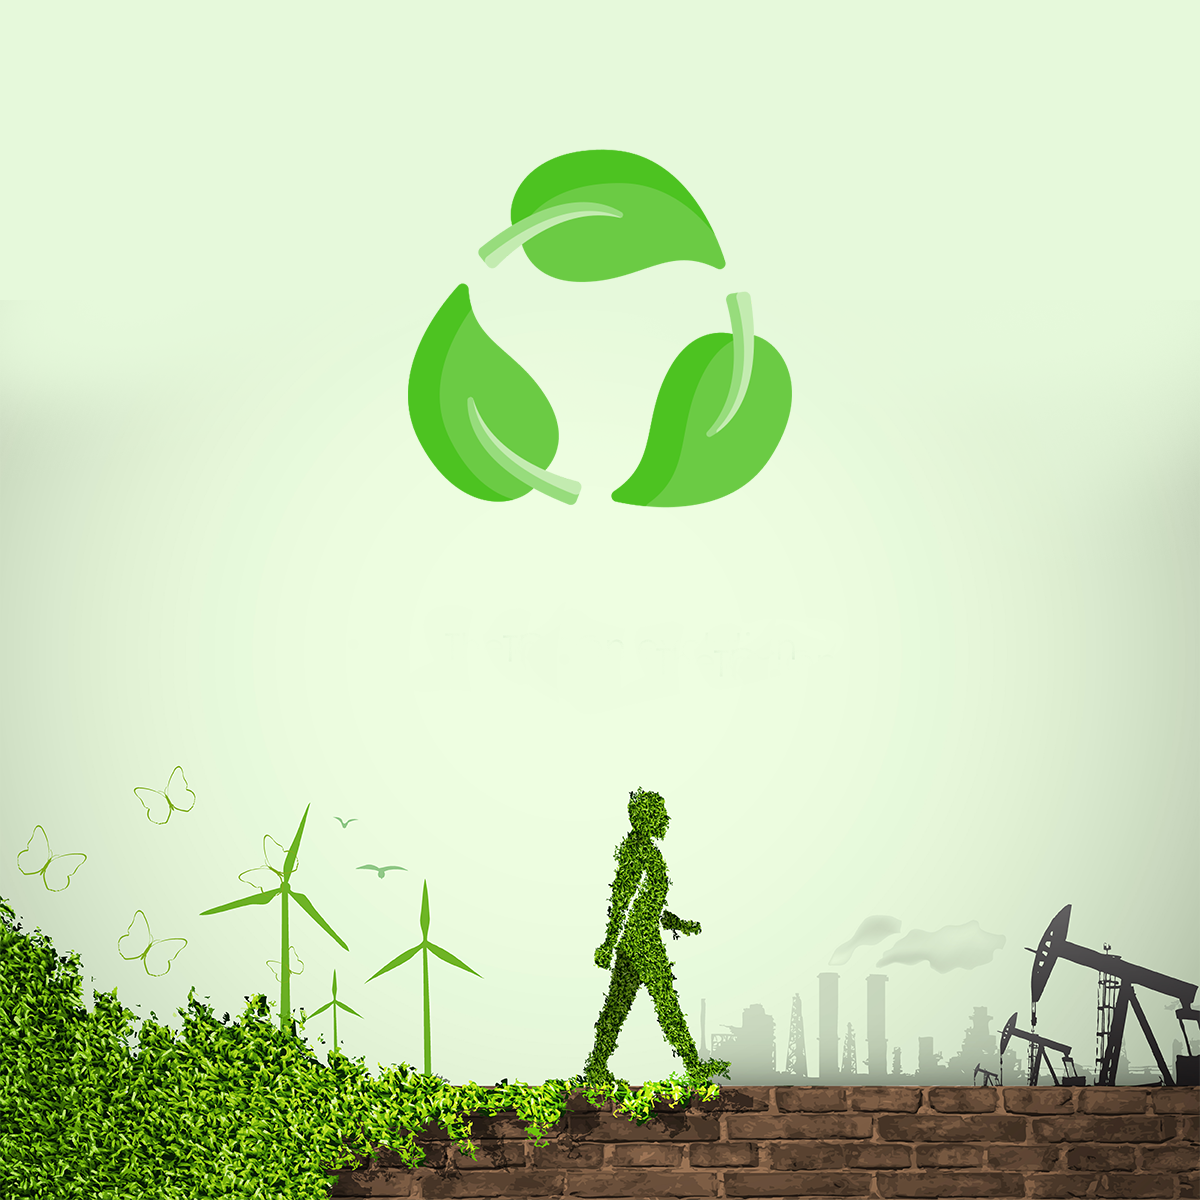 green revolution - through Bio Compostable Bags